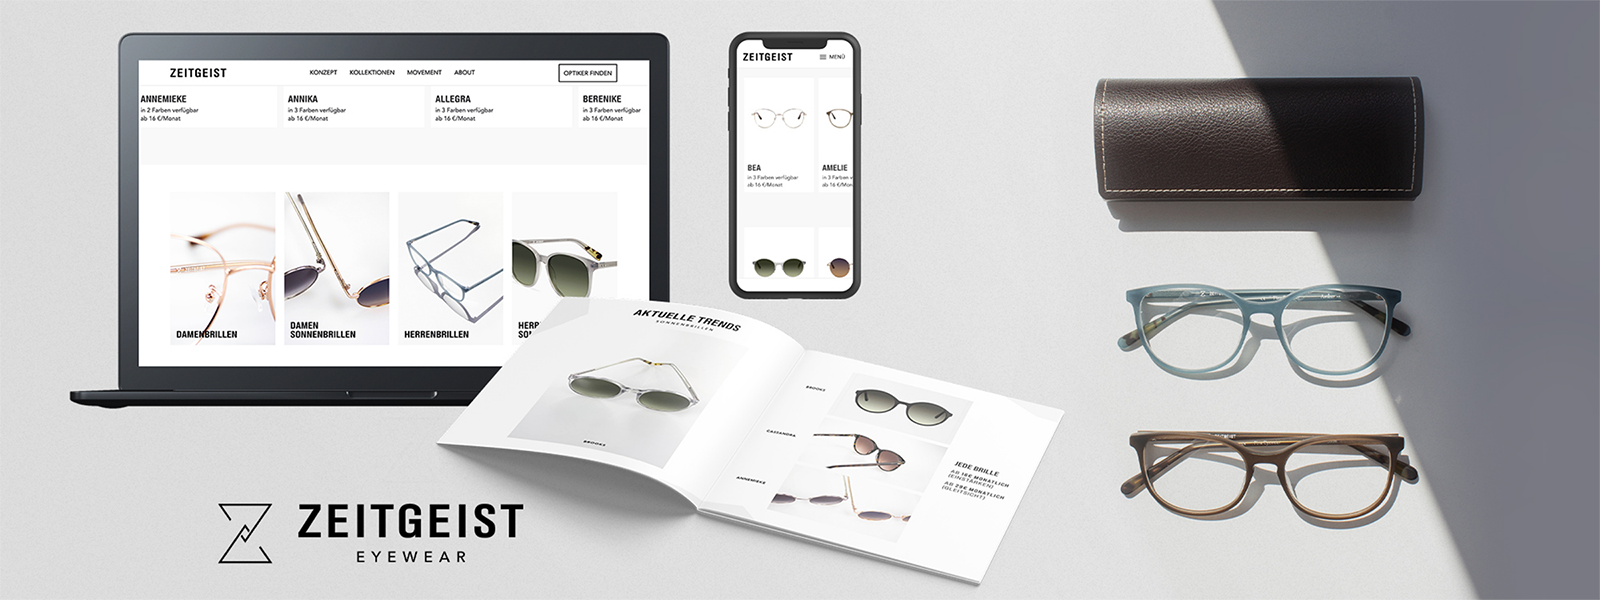 Grafikdesign und Webdesign für Brillenlabel - Portfolio Agentur Rocktician